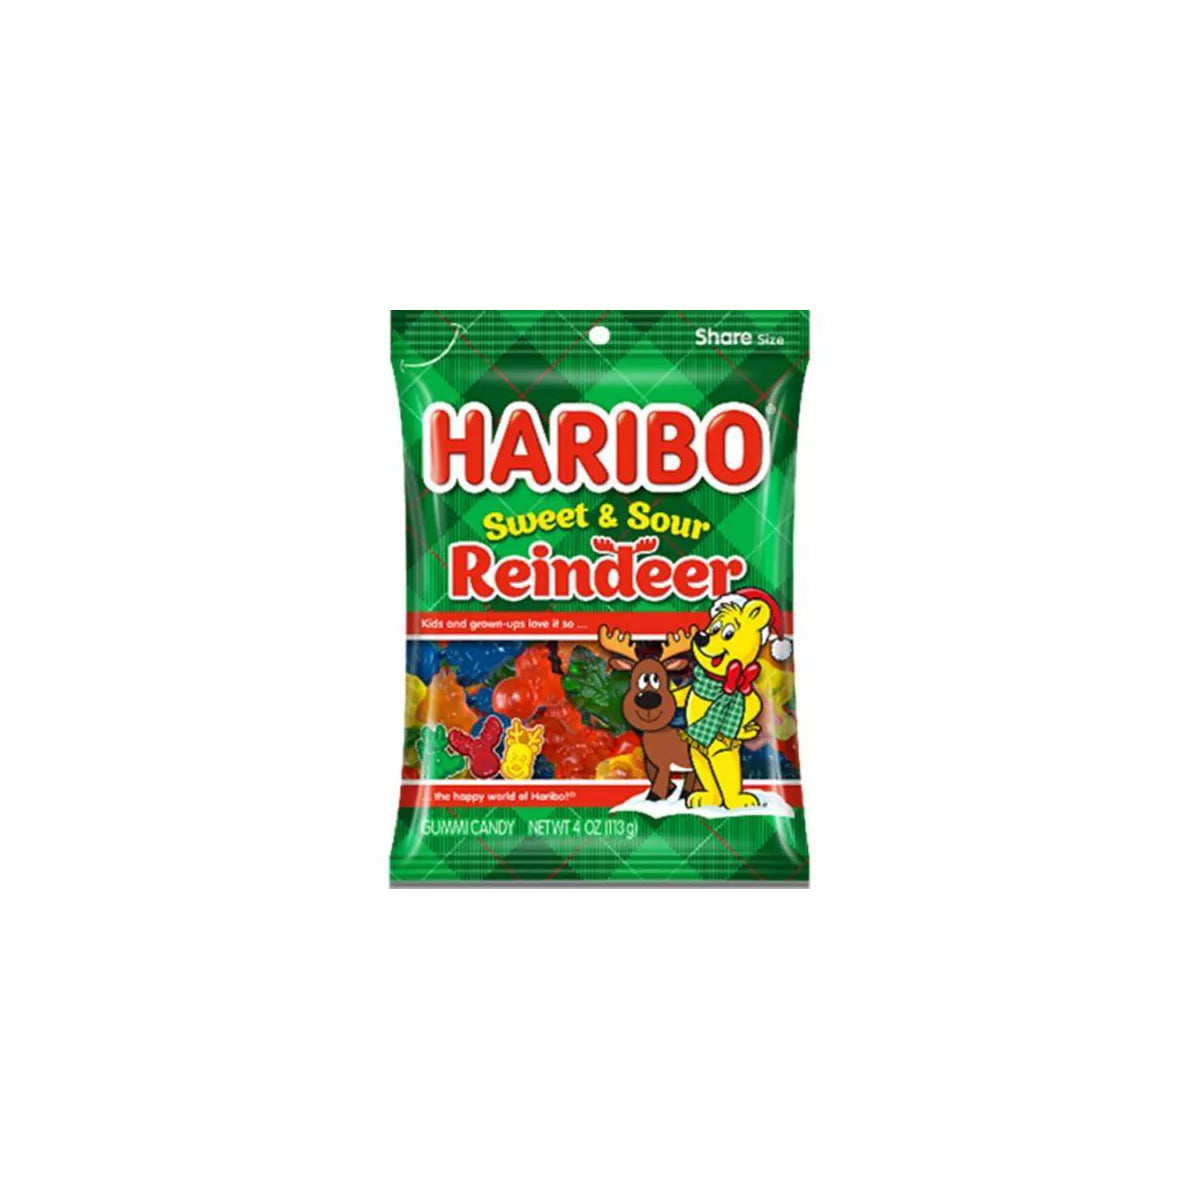 Haribo® Sweet & Sour Gummi Reindeer Holiday Candy Bag, 4 oz - Kroger